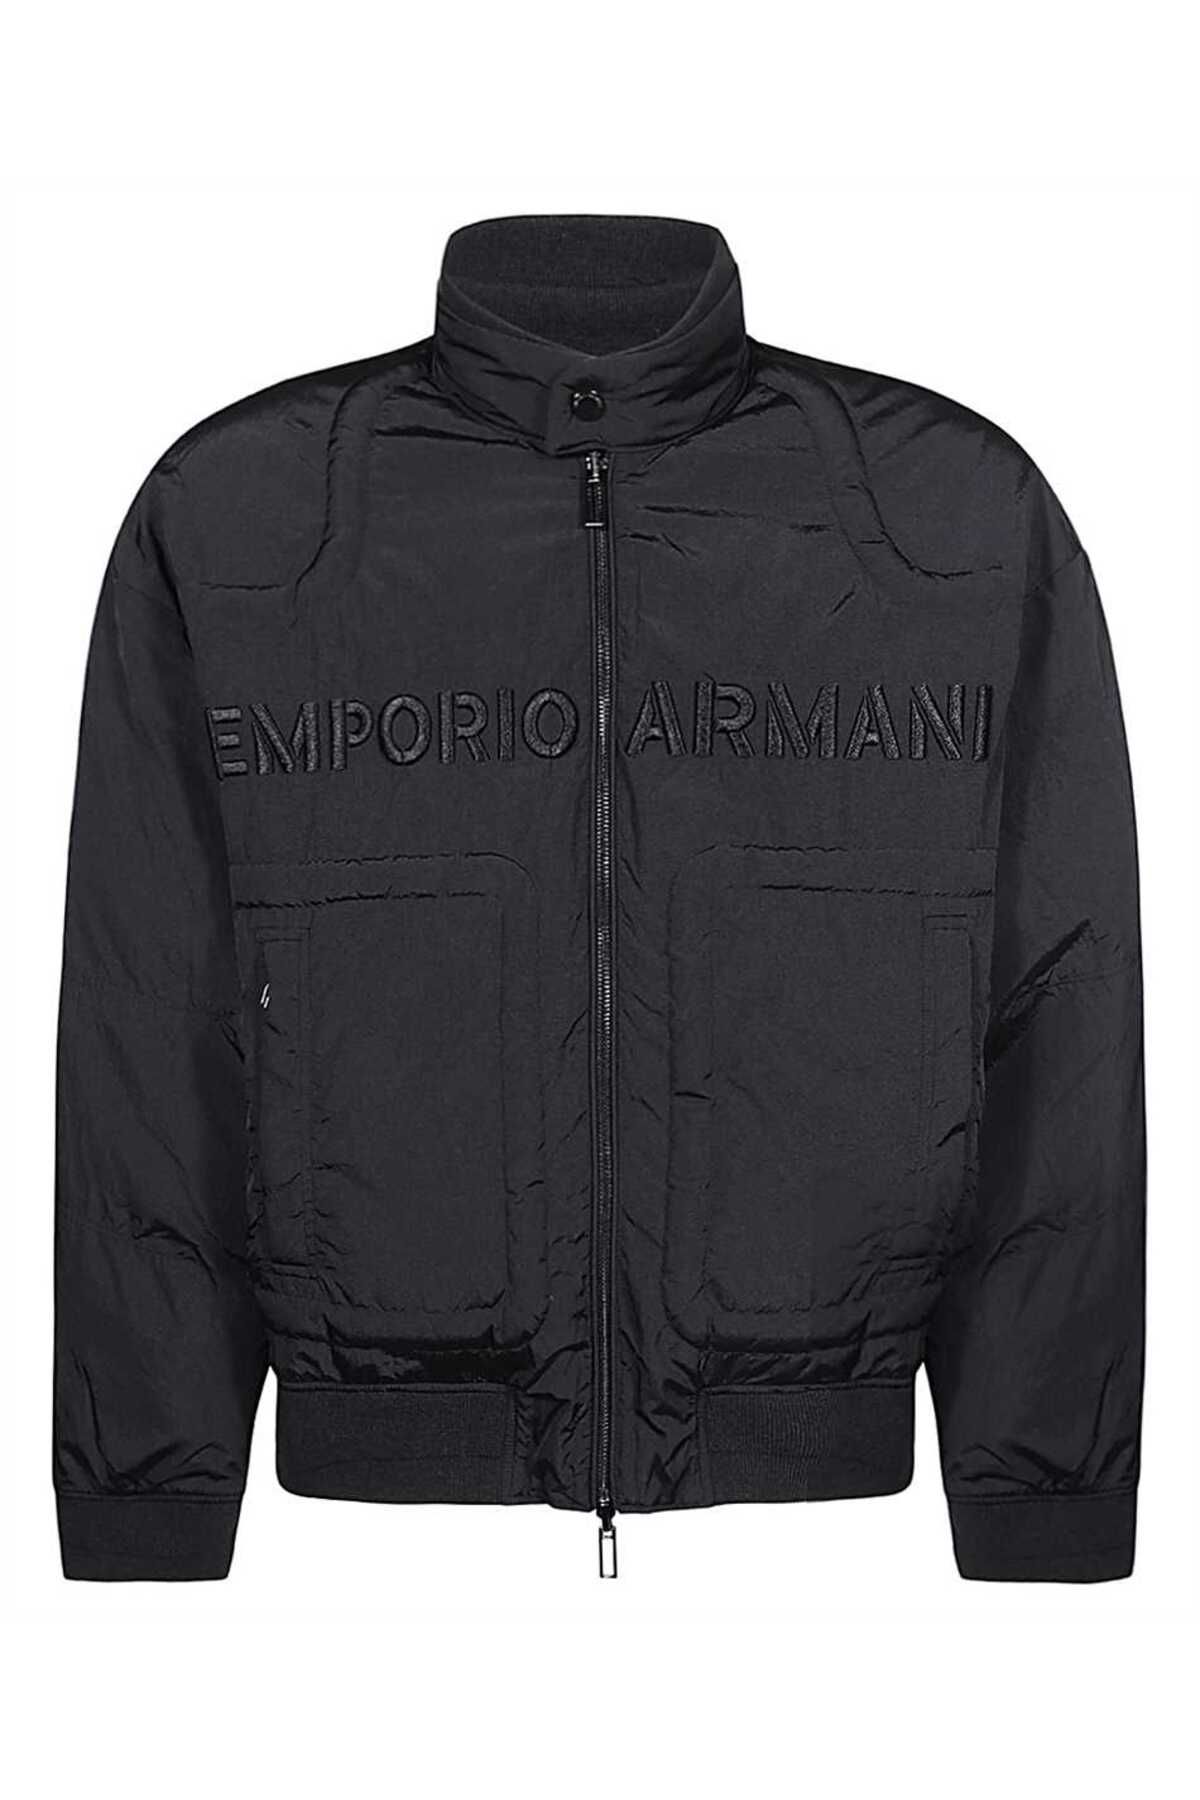 Emporio Armani Erkek Logolu Fermuar Kapamalı Cepli Kışlık Lacivert Mont 6R1B75 1NFEZ-0920